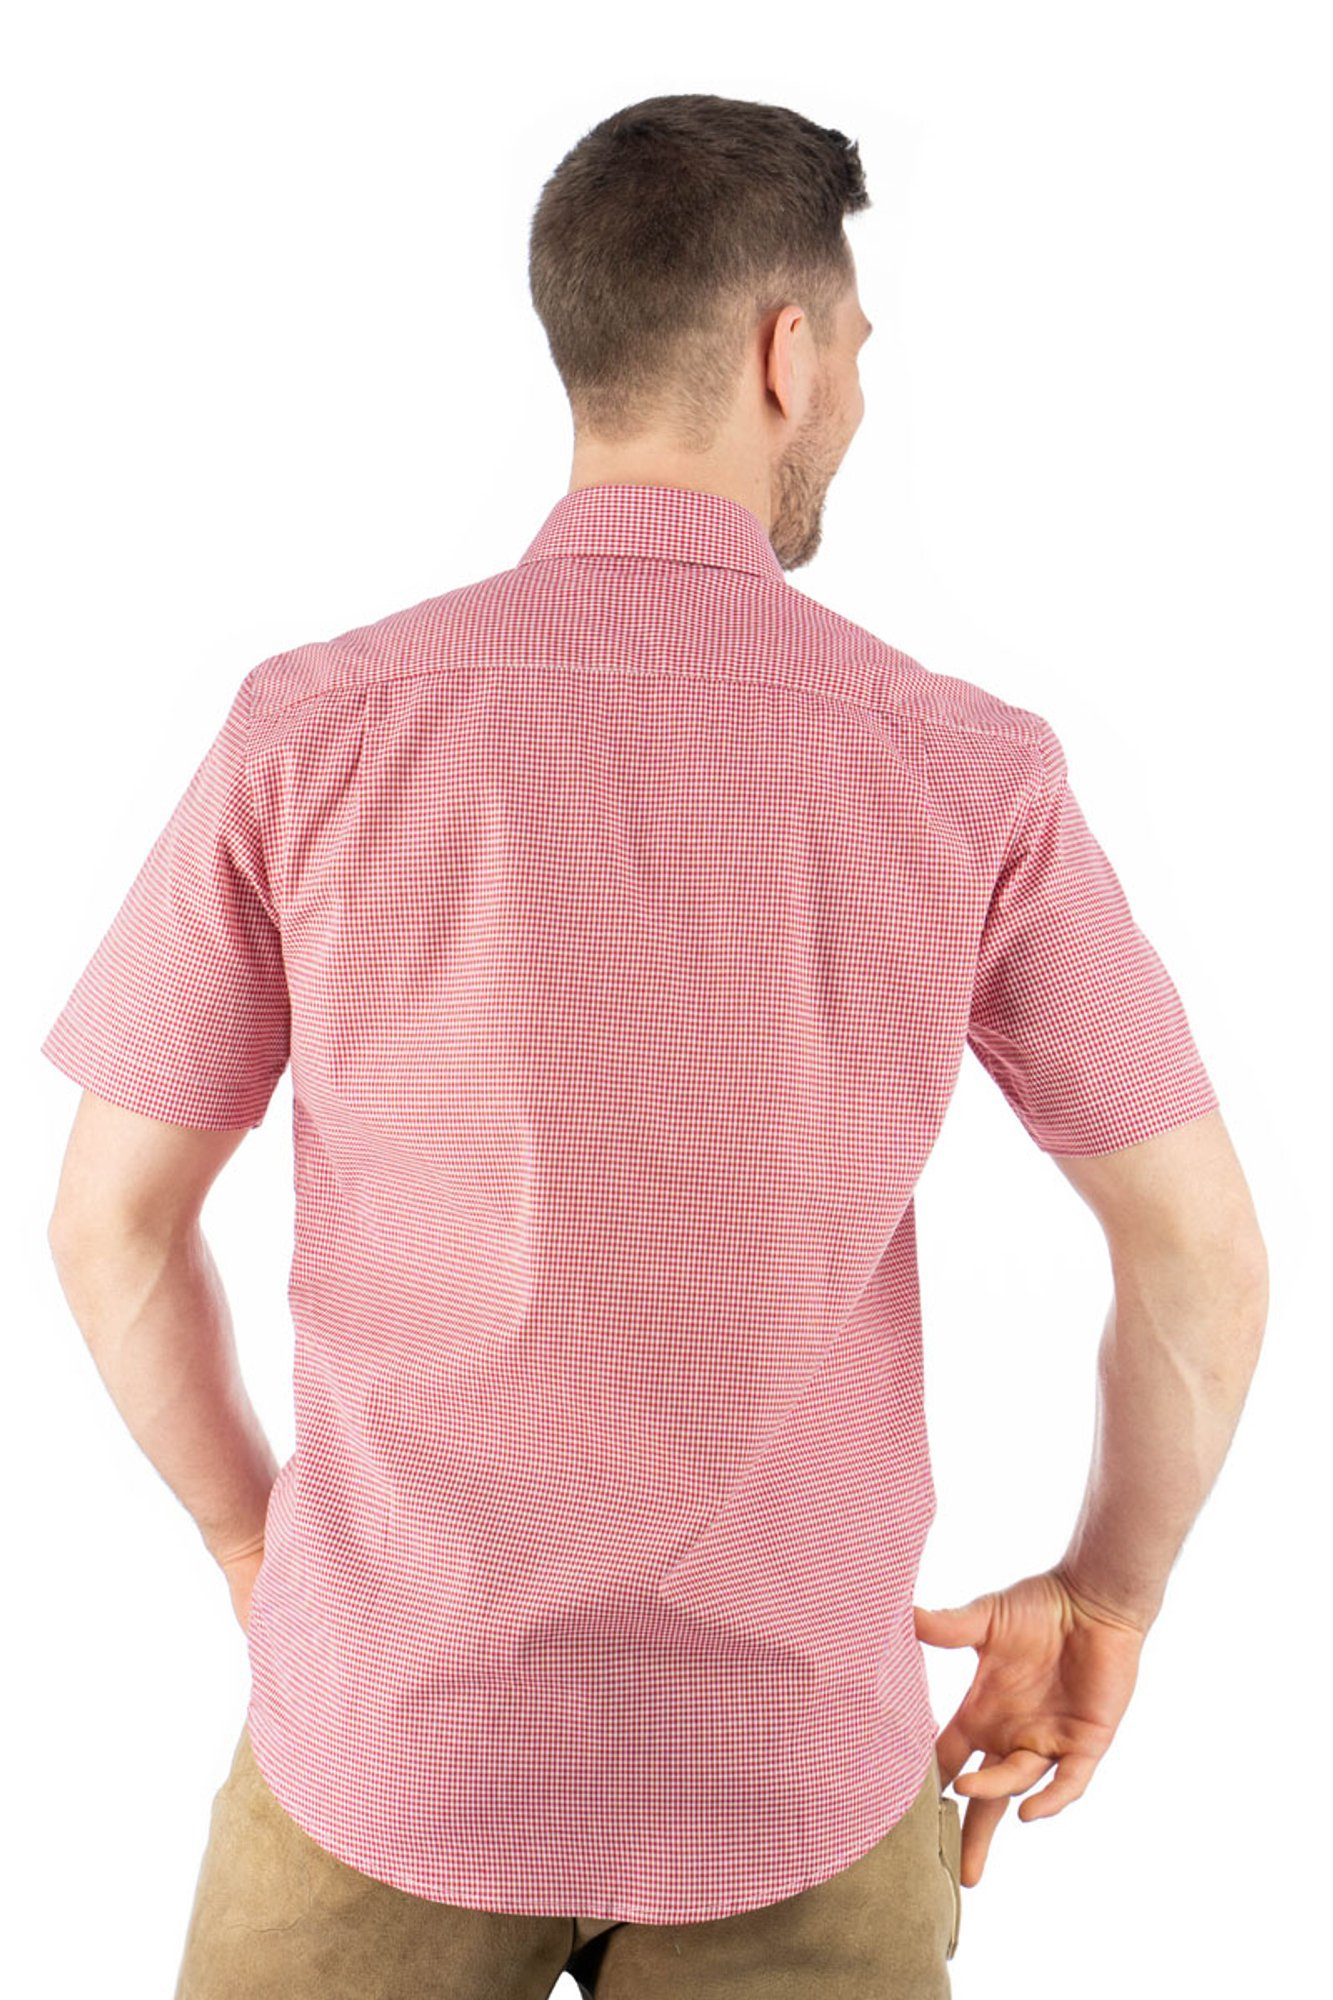 OS-Trachten Trachtenhemd Weonys hochrot Edelweiß-Stickerei mit Kurzarmhemd Knopfleiste auf der Paspeltasche